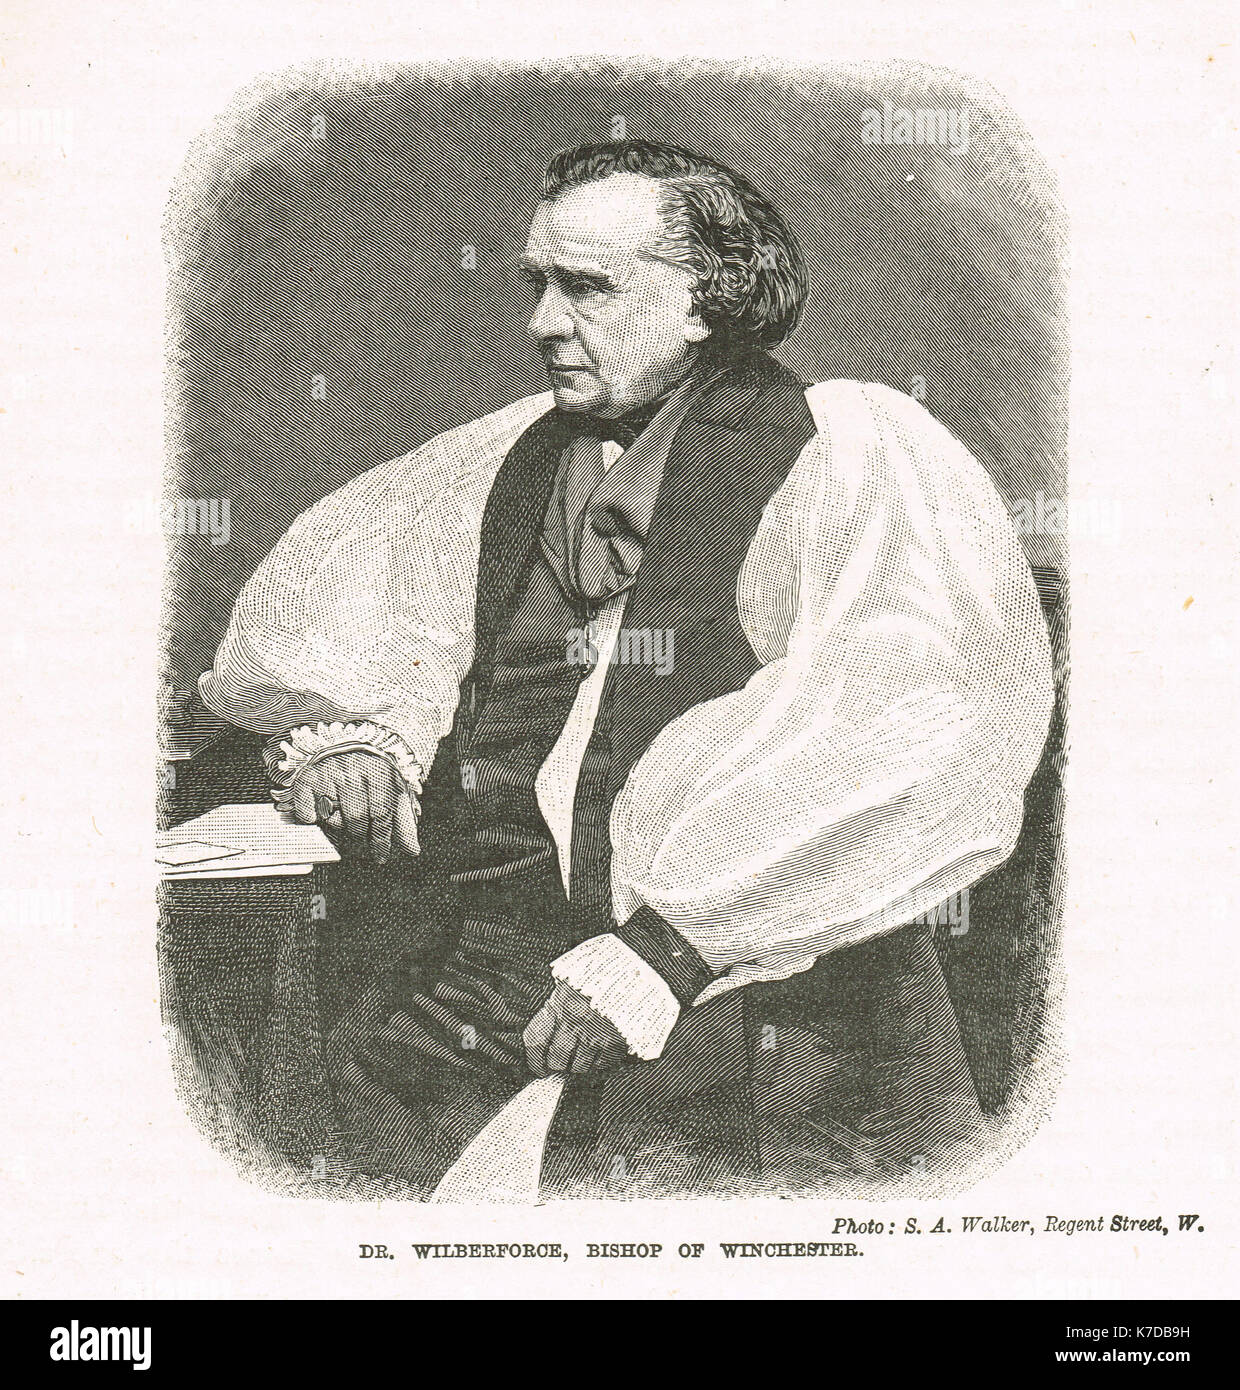 Samuel wilberforce, avversario di Darwin la teoria dell'evoluzione circa nel 1870 Foto Stock